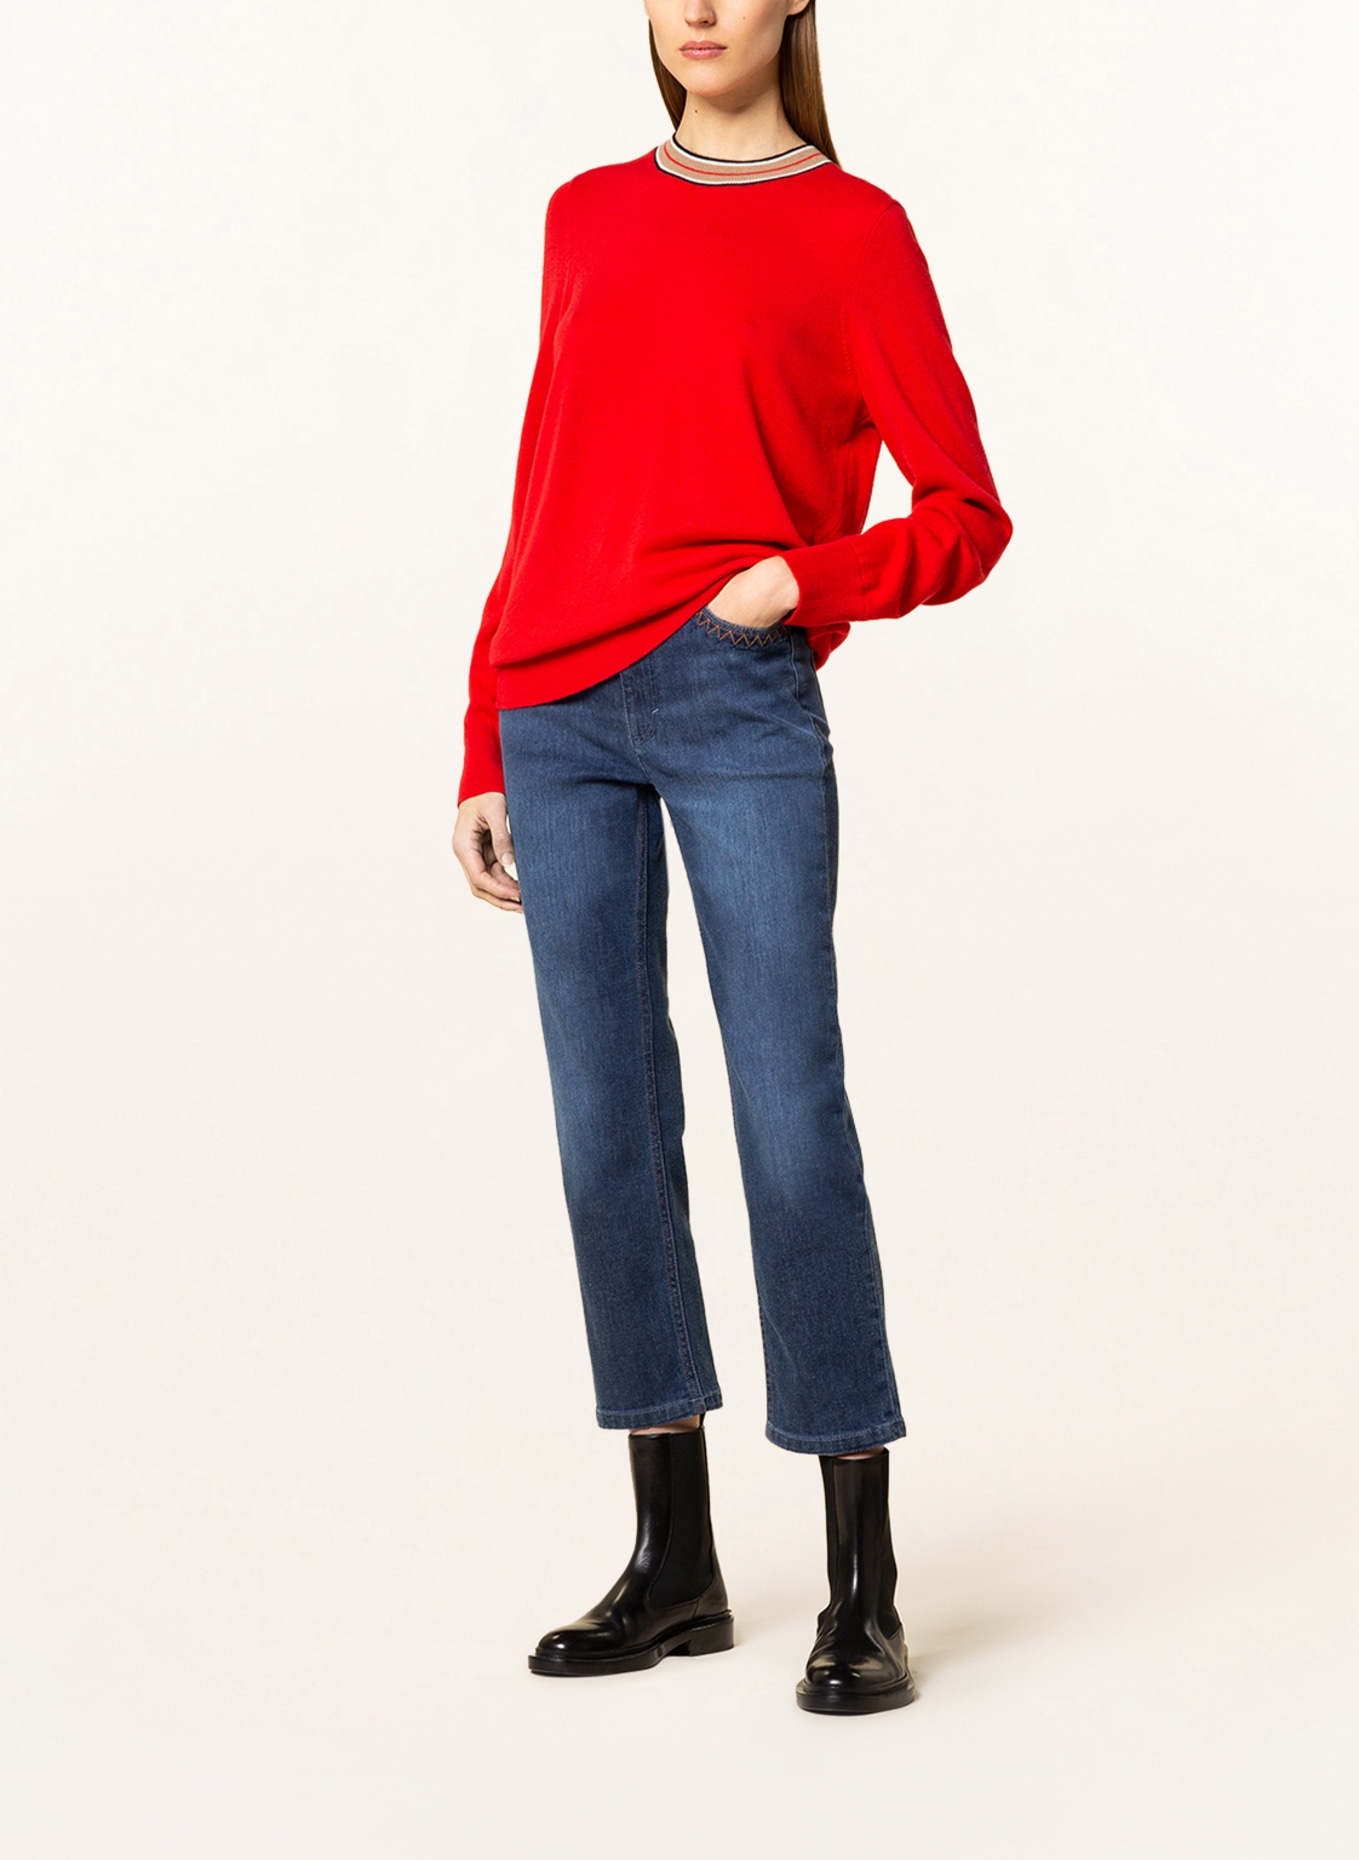 BURBERRY Cashmere-Pullover TILDA, Farbe: ROT (Bild 2)